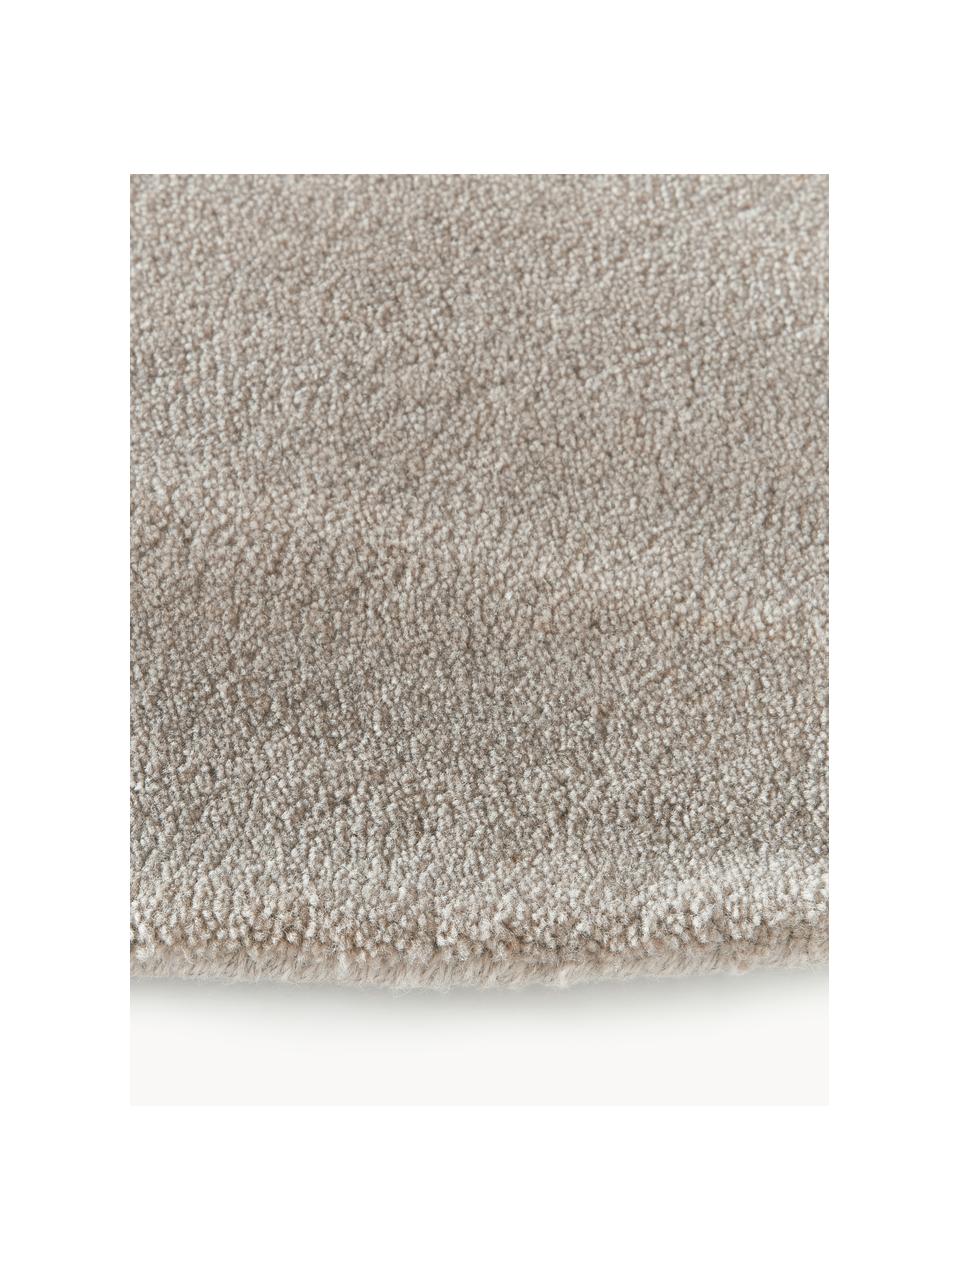 Kulatý ručně všívaný vlněný koberec s nízkým vlasem Ezra, Greige, Ø 250 cm (velikost XL)